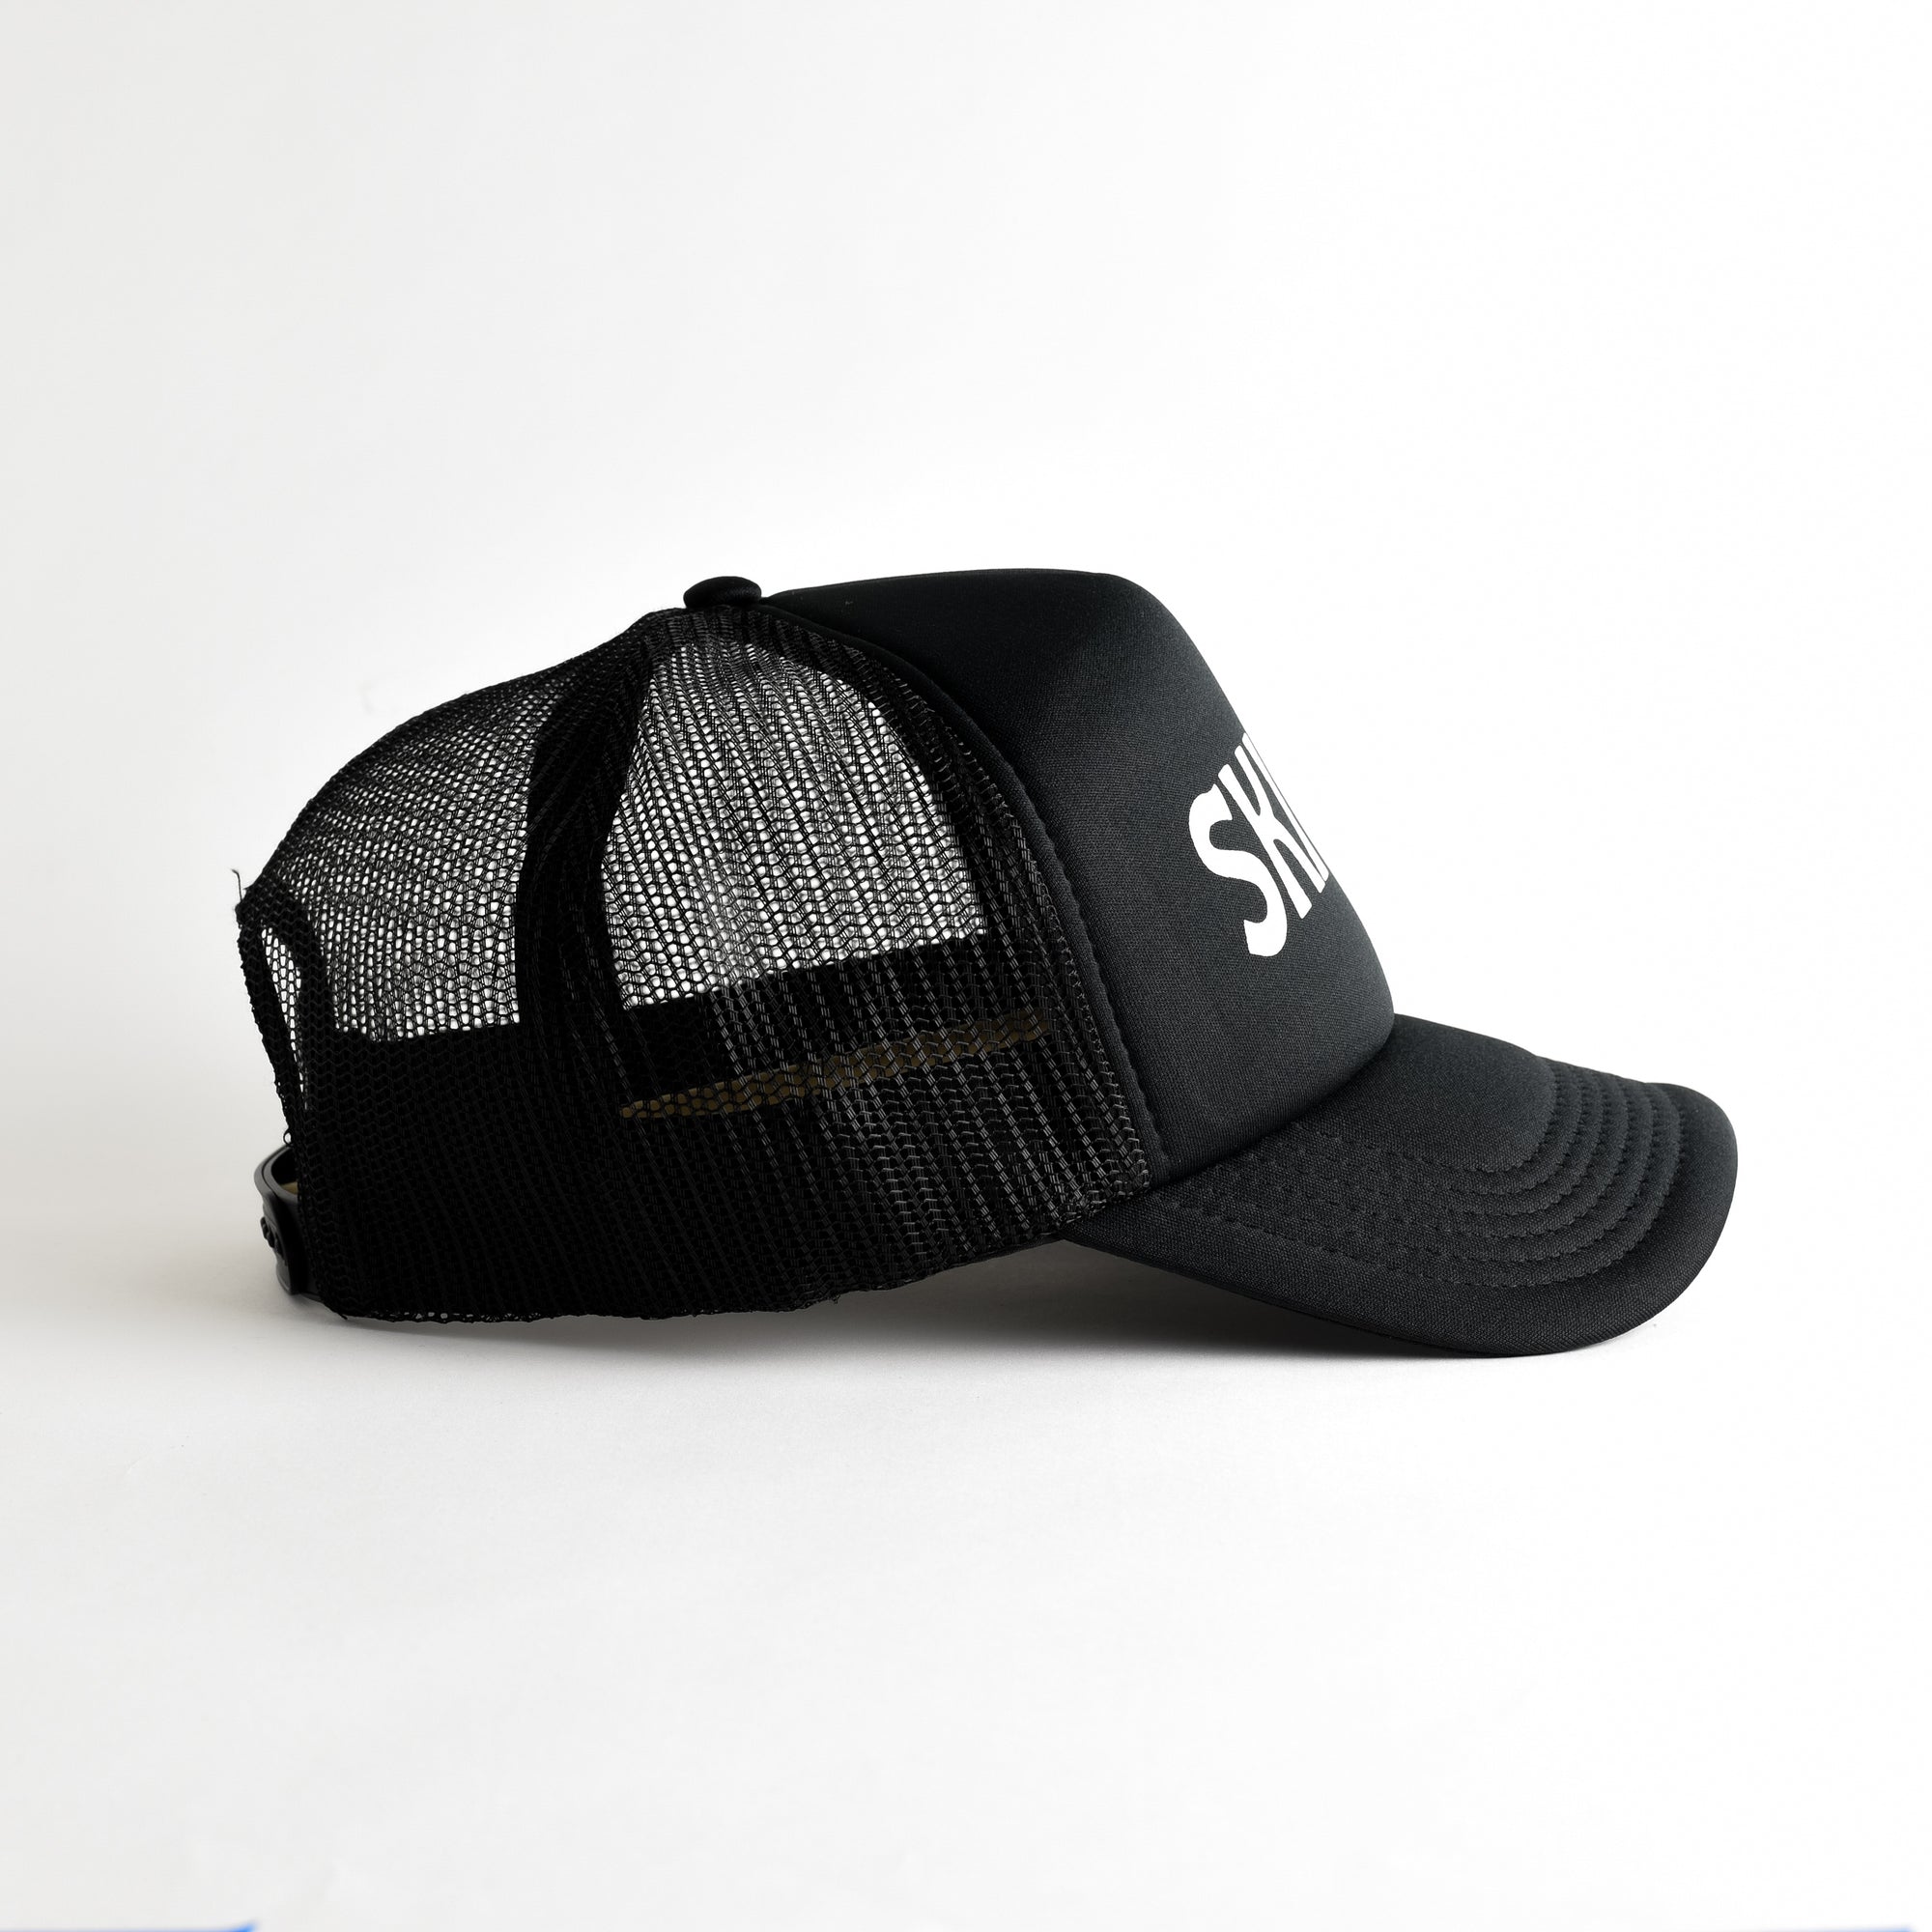 Ski Day Recycled Trucker Hat - black